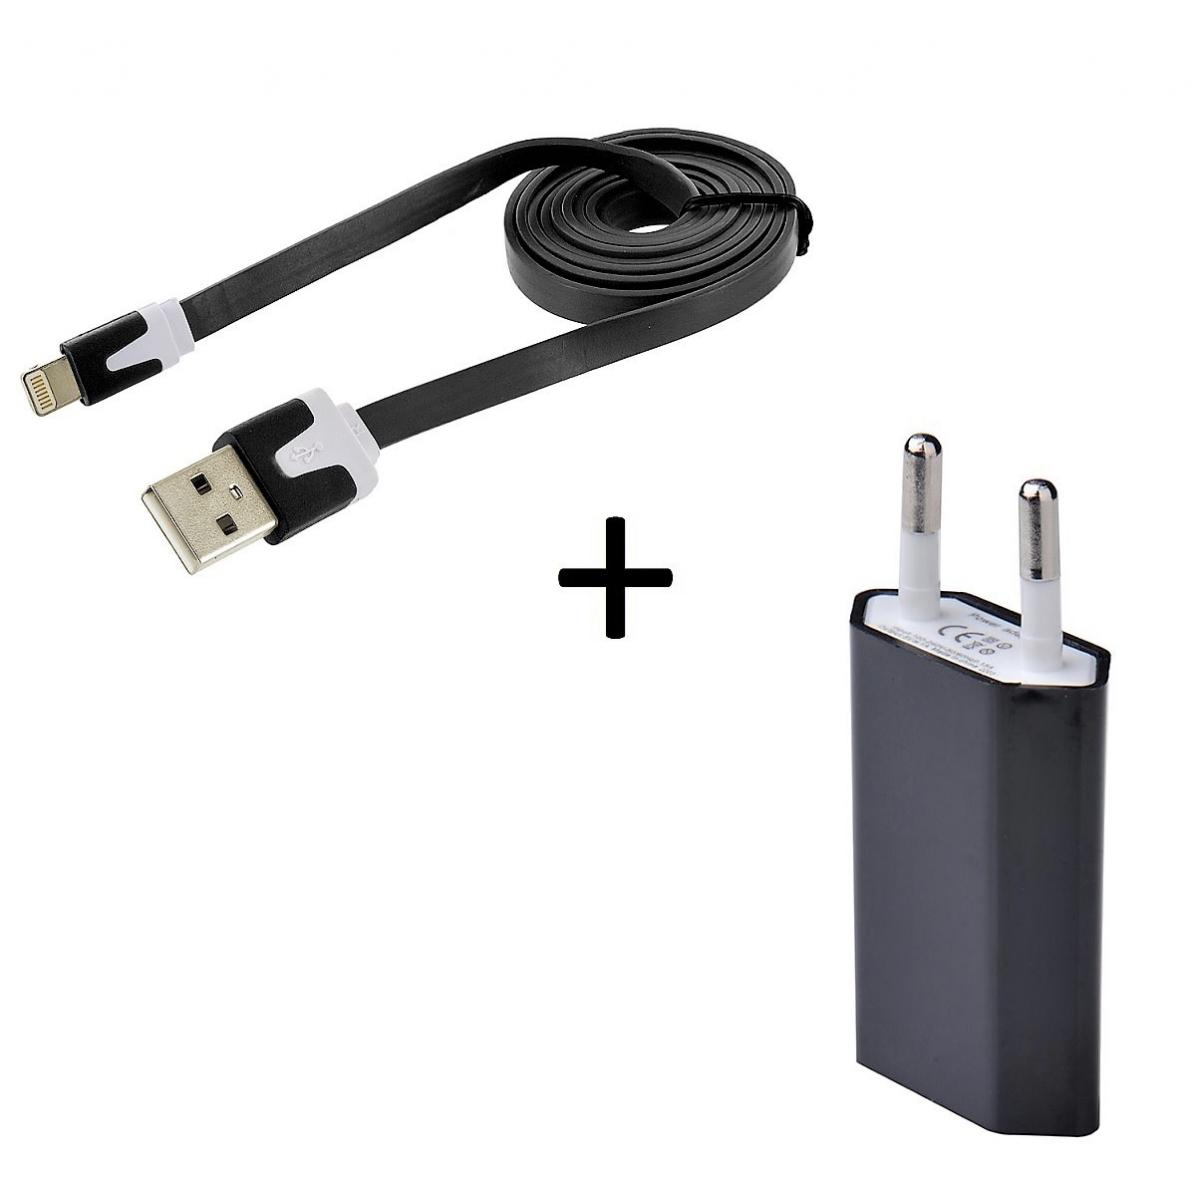 Shot - Cable Noodle 1m Chargeur + Prise Secteur pour "IPHONE 12 Mini"USB Lightning Murale Pack (NOIR) - Chargeur secteur téléphone